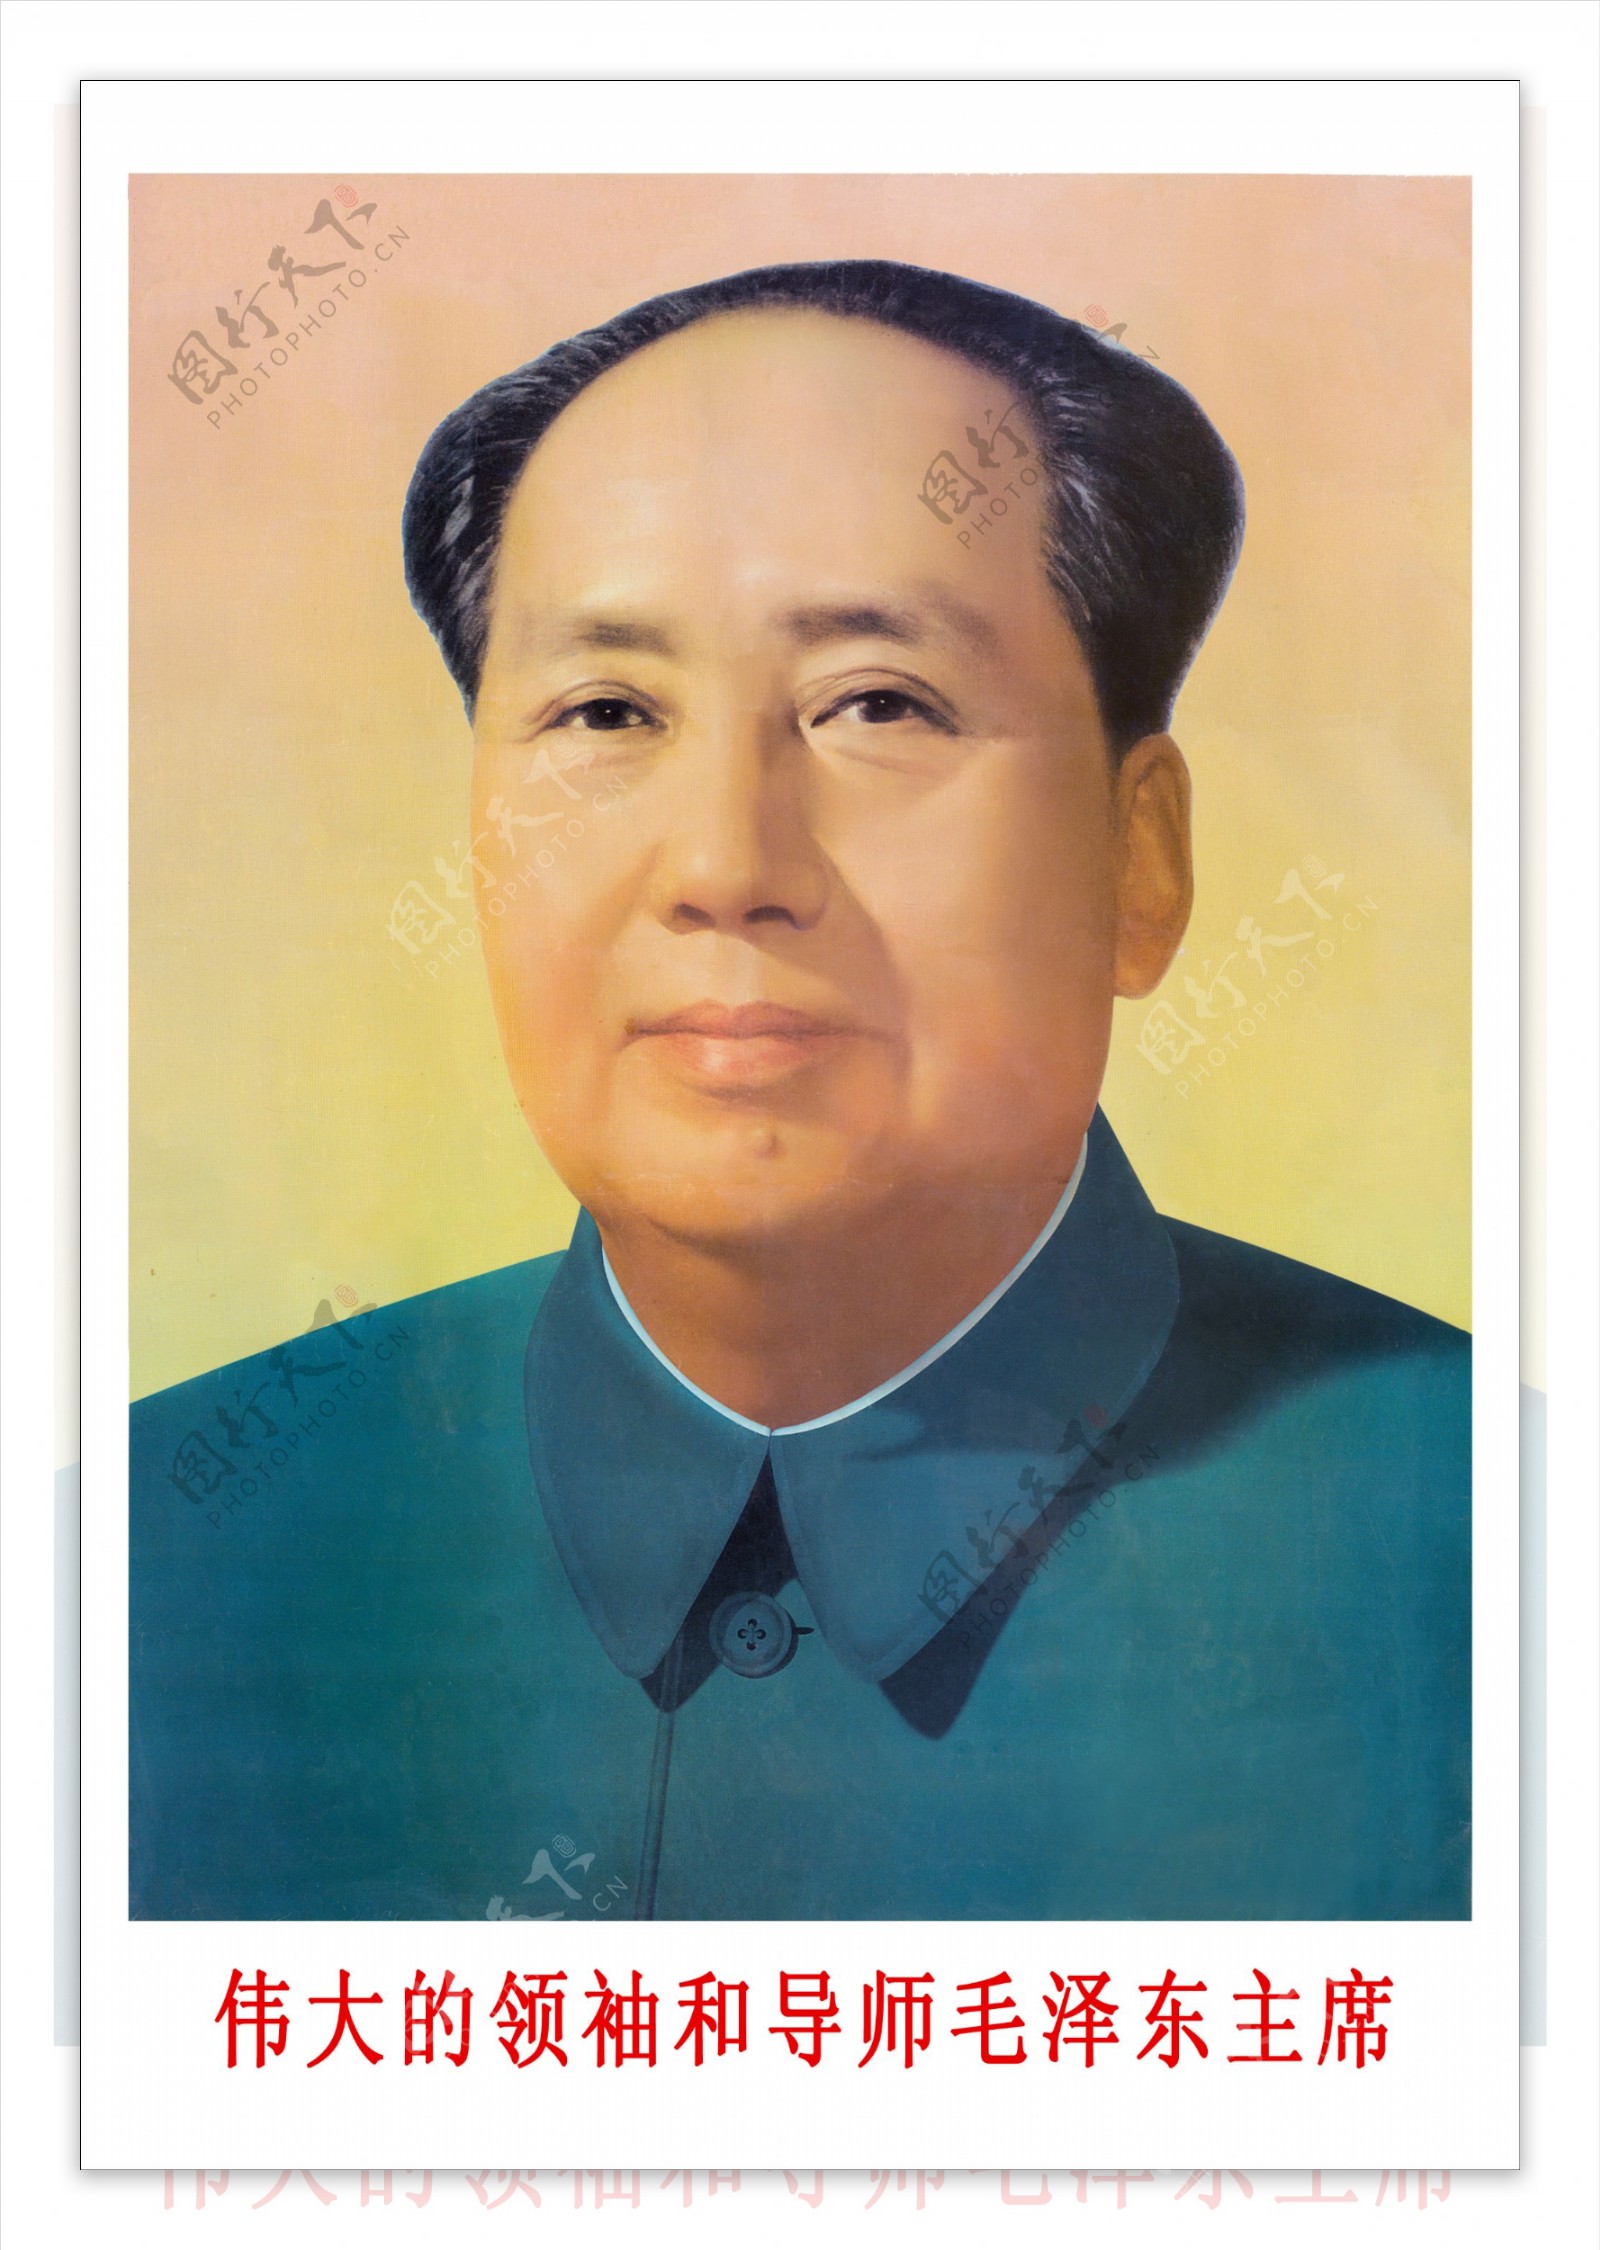 毛泽东肖像图片